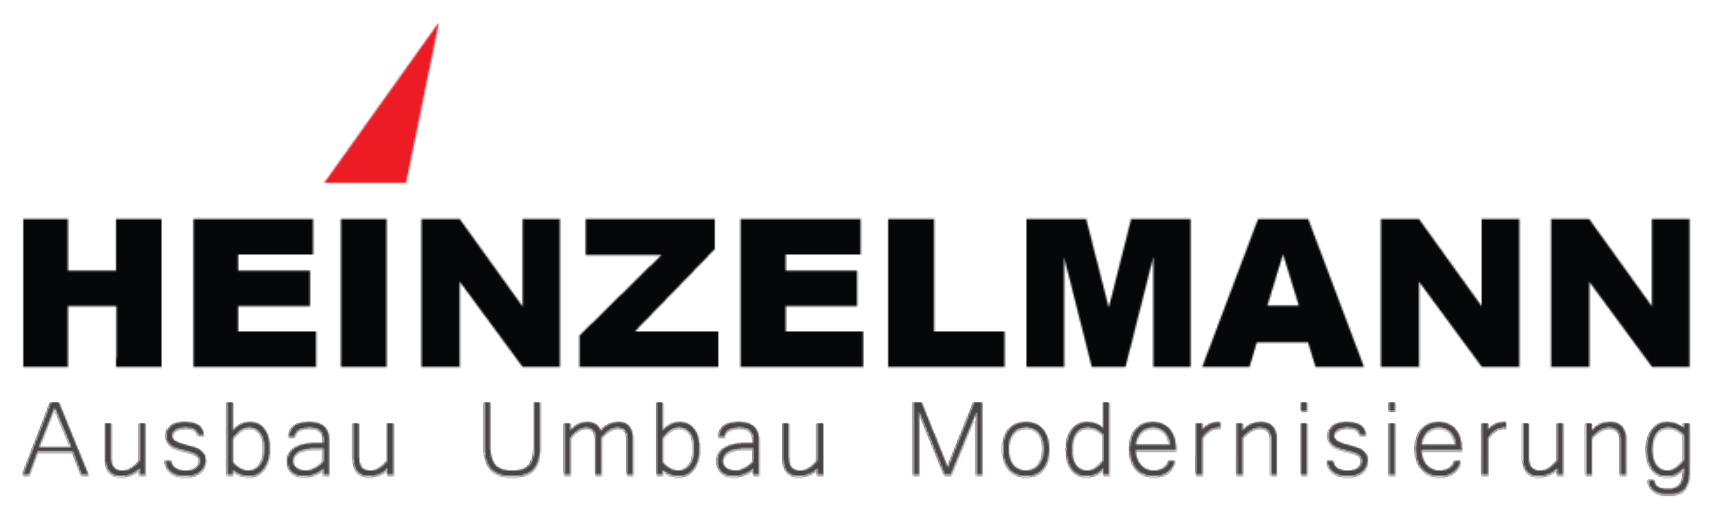 Heinzelmann GmbH logo